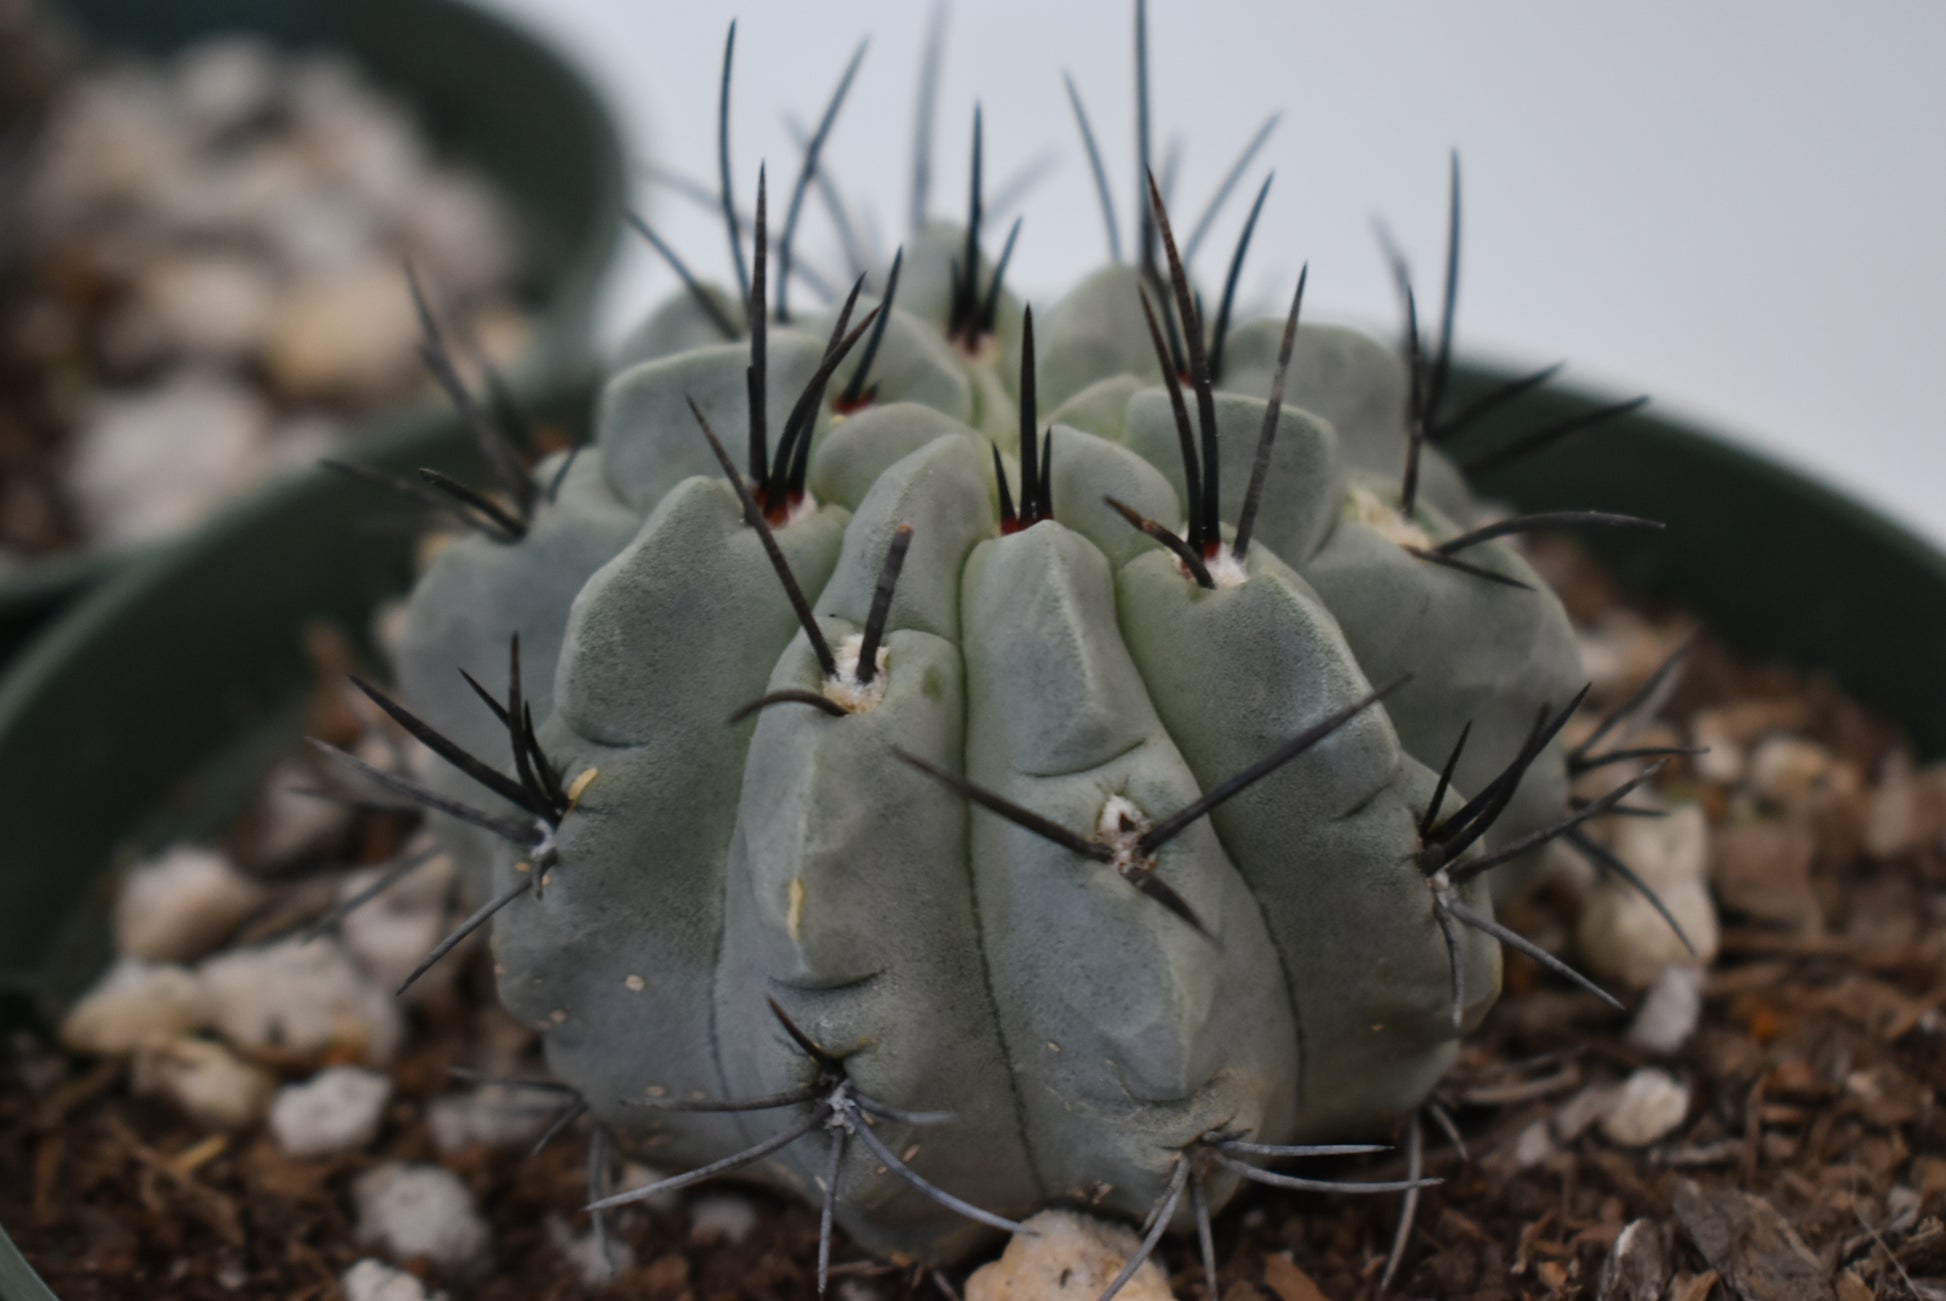 Eriosyce paucicostata Live Cactus in 5 Inch